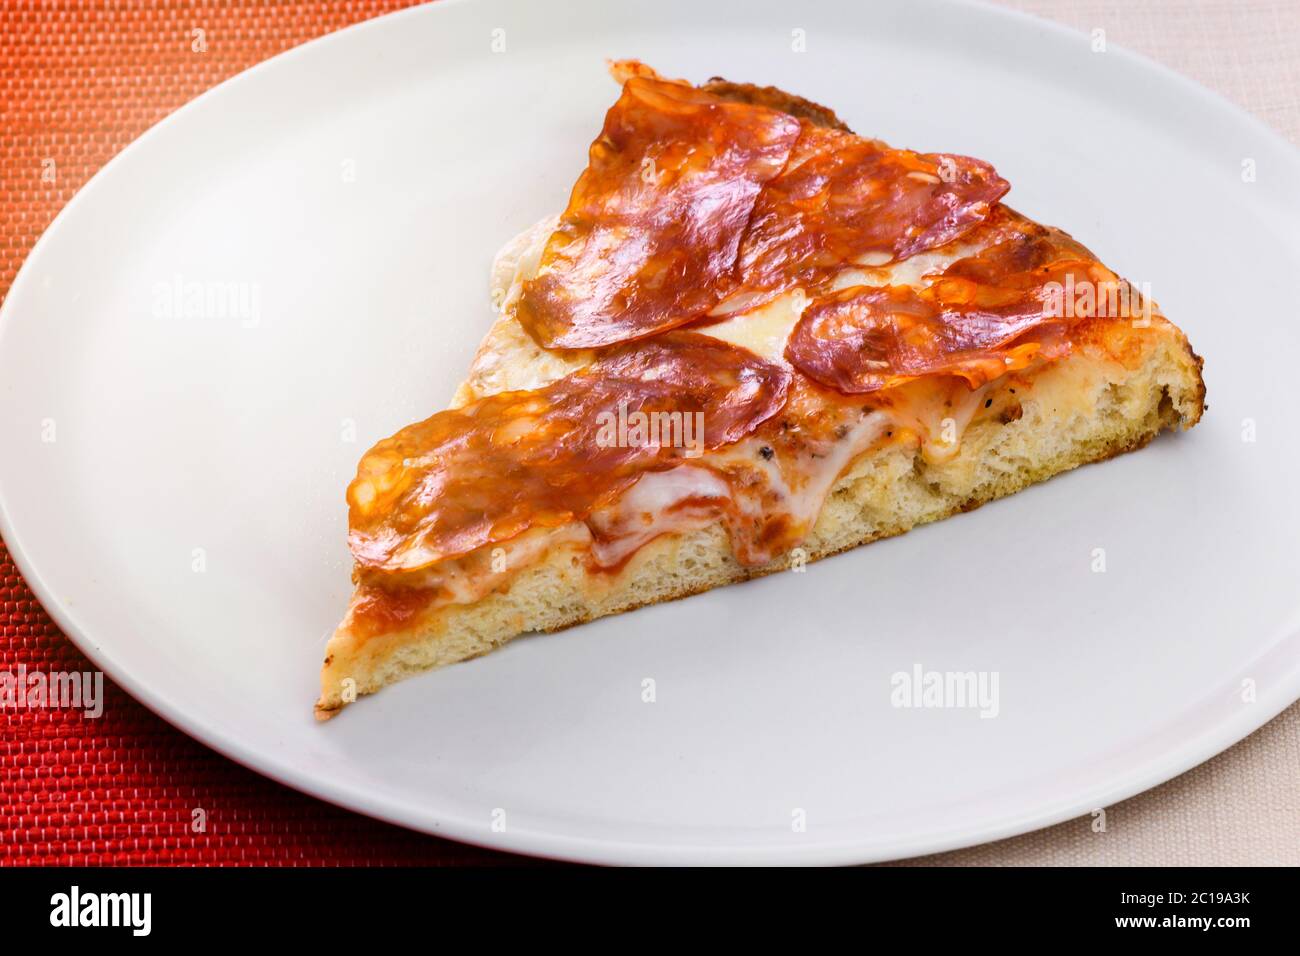 Scheibe traditionelle italienische würzige Salami Pizza Besatz auf einem generischen weißen Teller in der Nähe zeigt die Textur der Basis Stockfoto